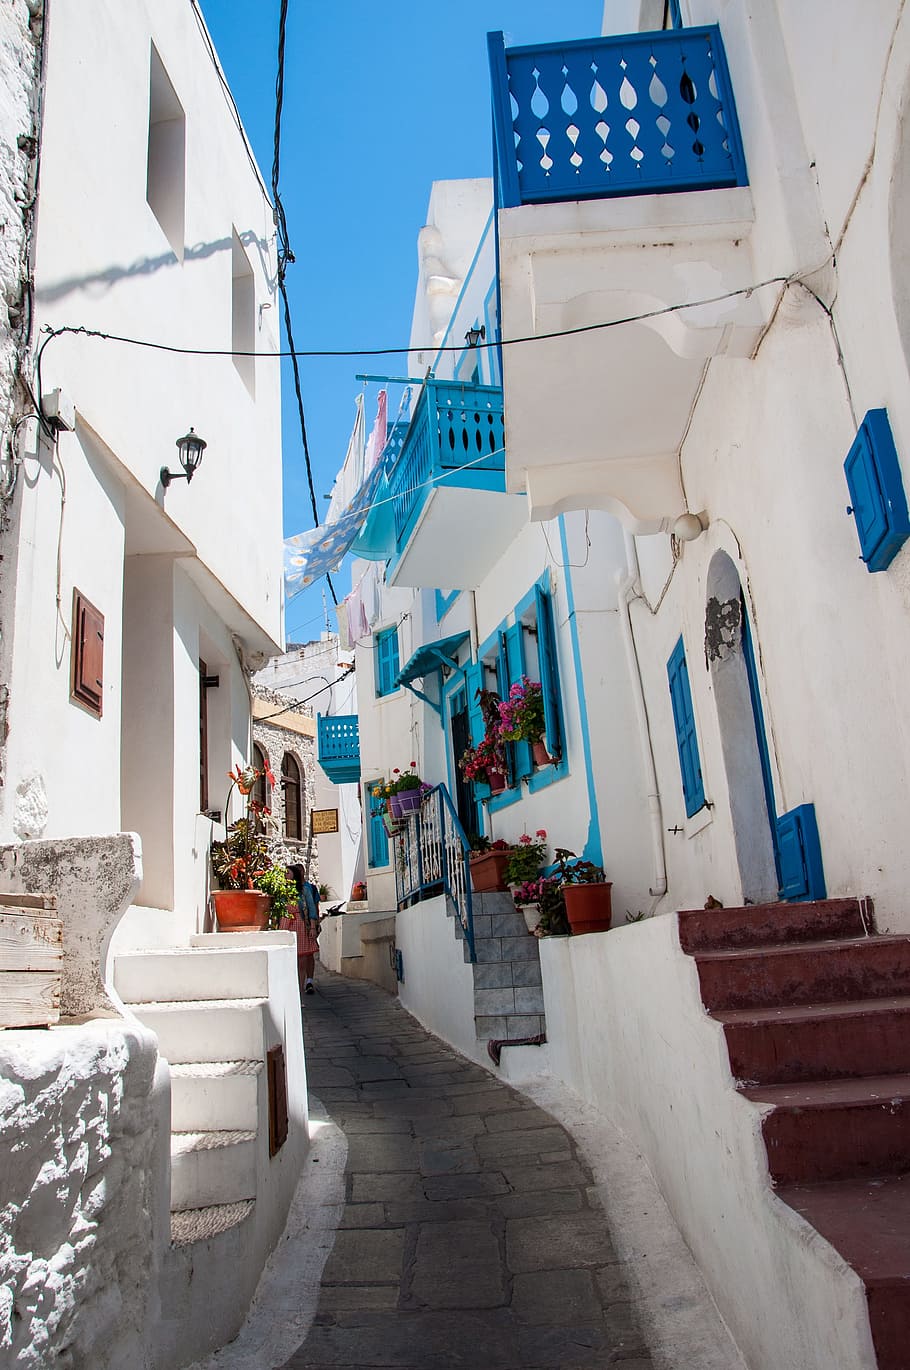 Vacaciones, Grecia, Mar Egeo, Blanco, azul, griego tradicional, casas blancas, arquitectura, casas, turismo